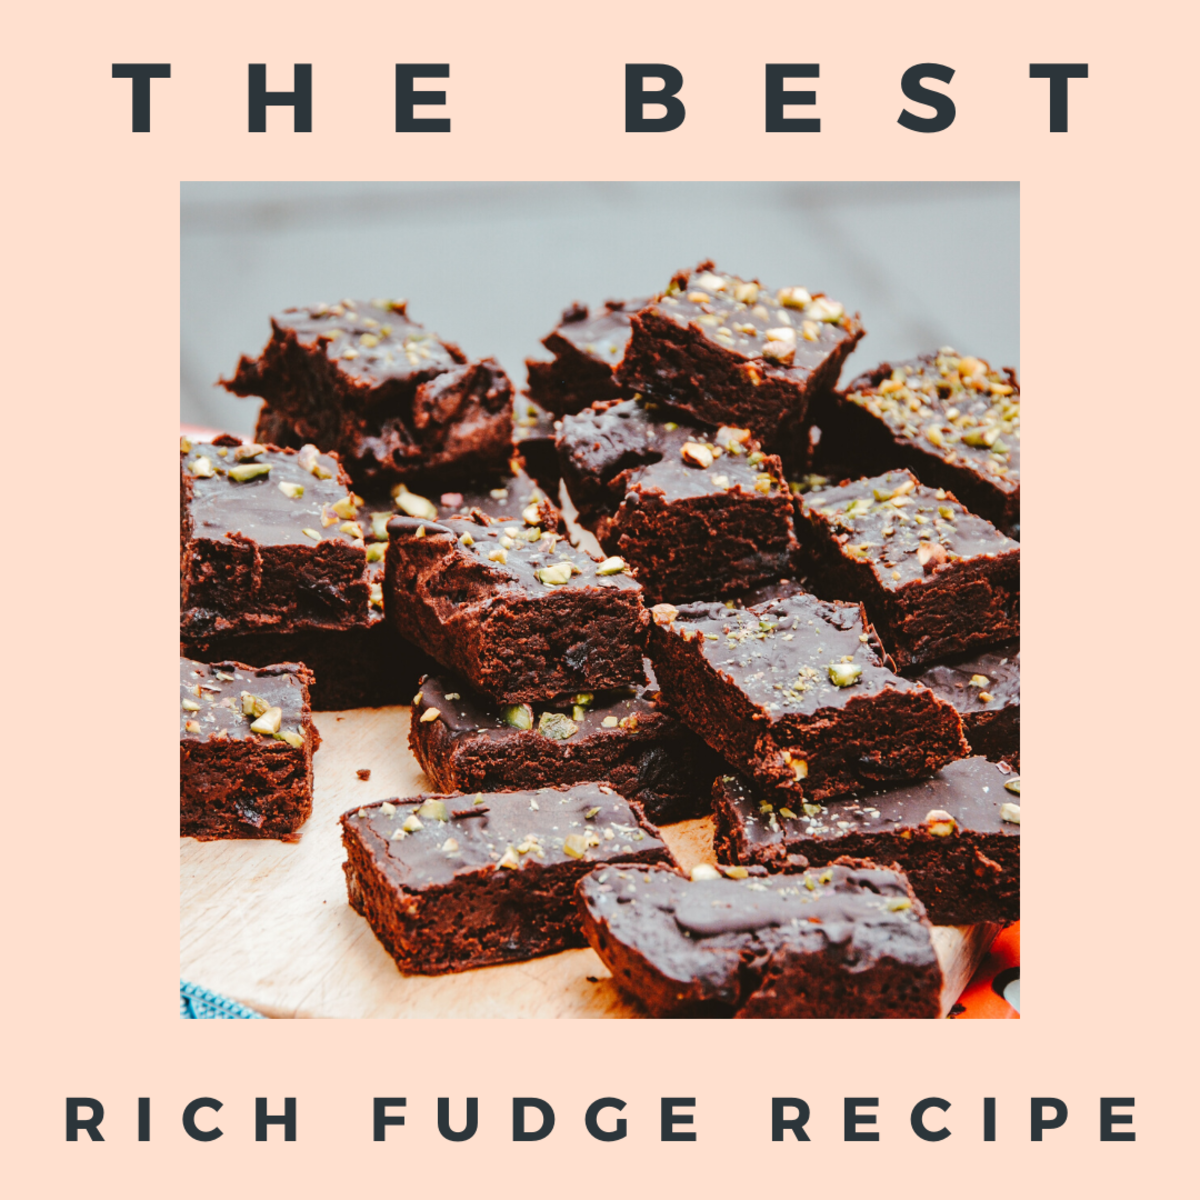 The Best Rich Chocolate Fudge Recipe